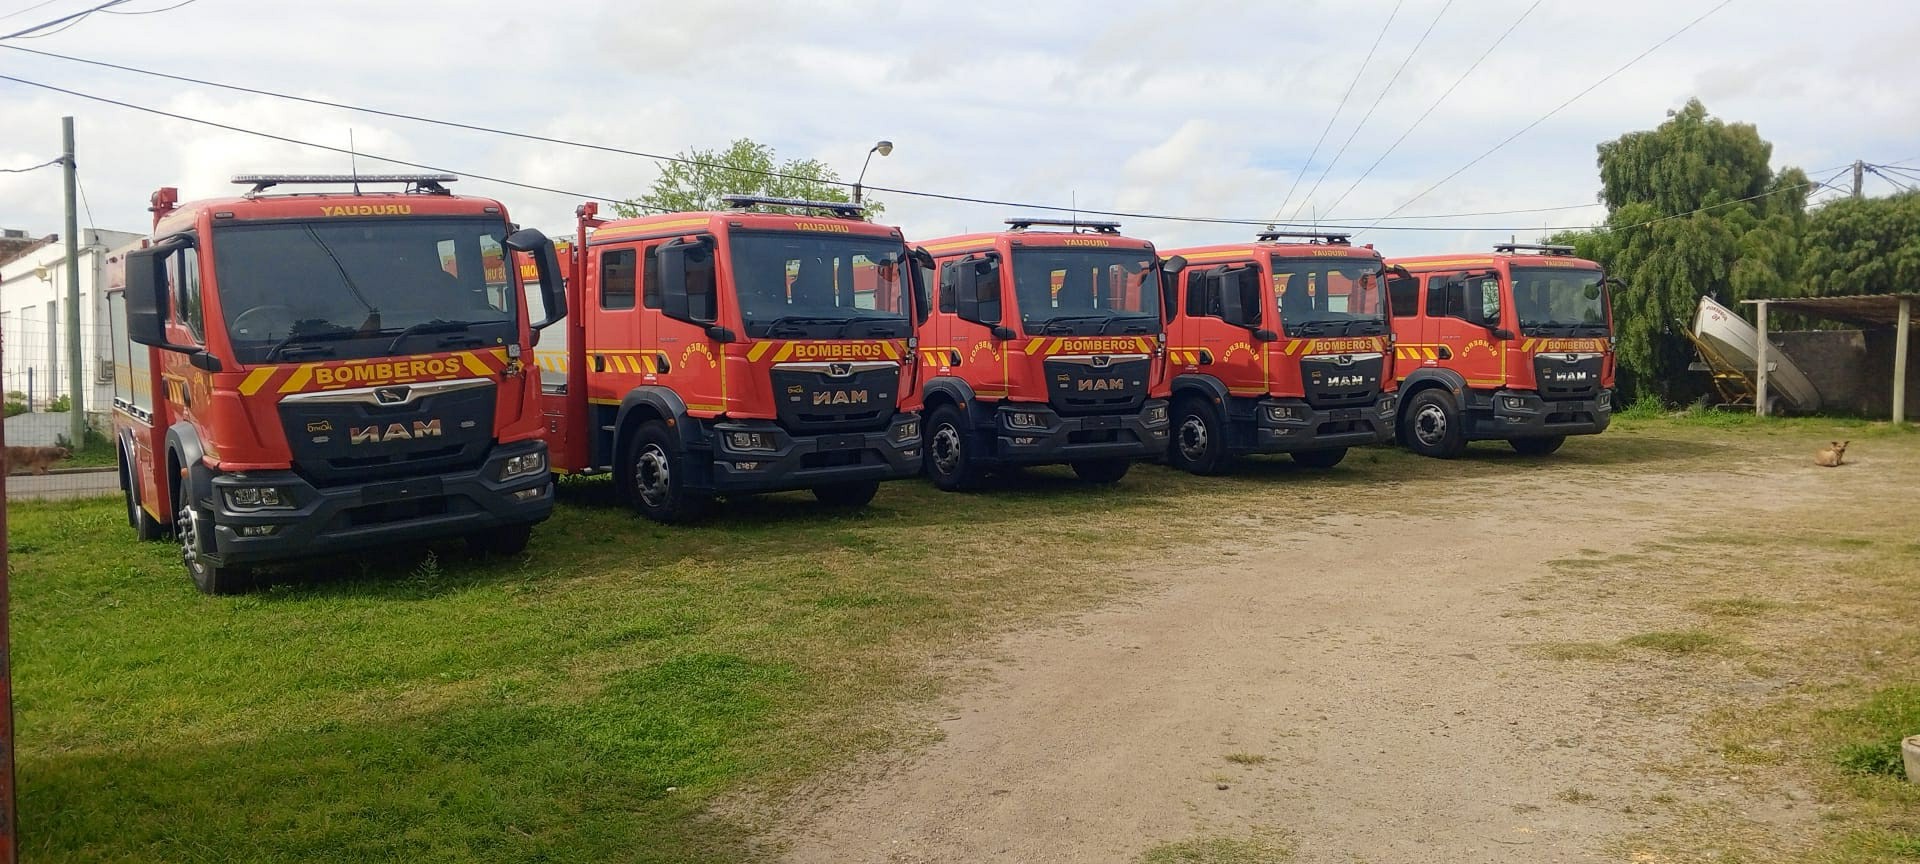 Nuevos camiones de bomberos llegan a Florida para la temporada de verano